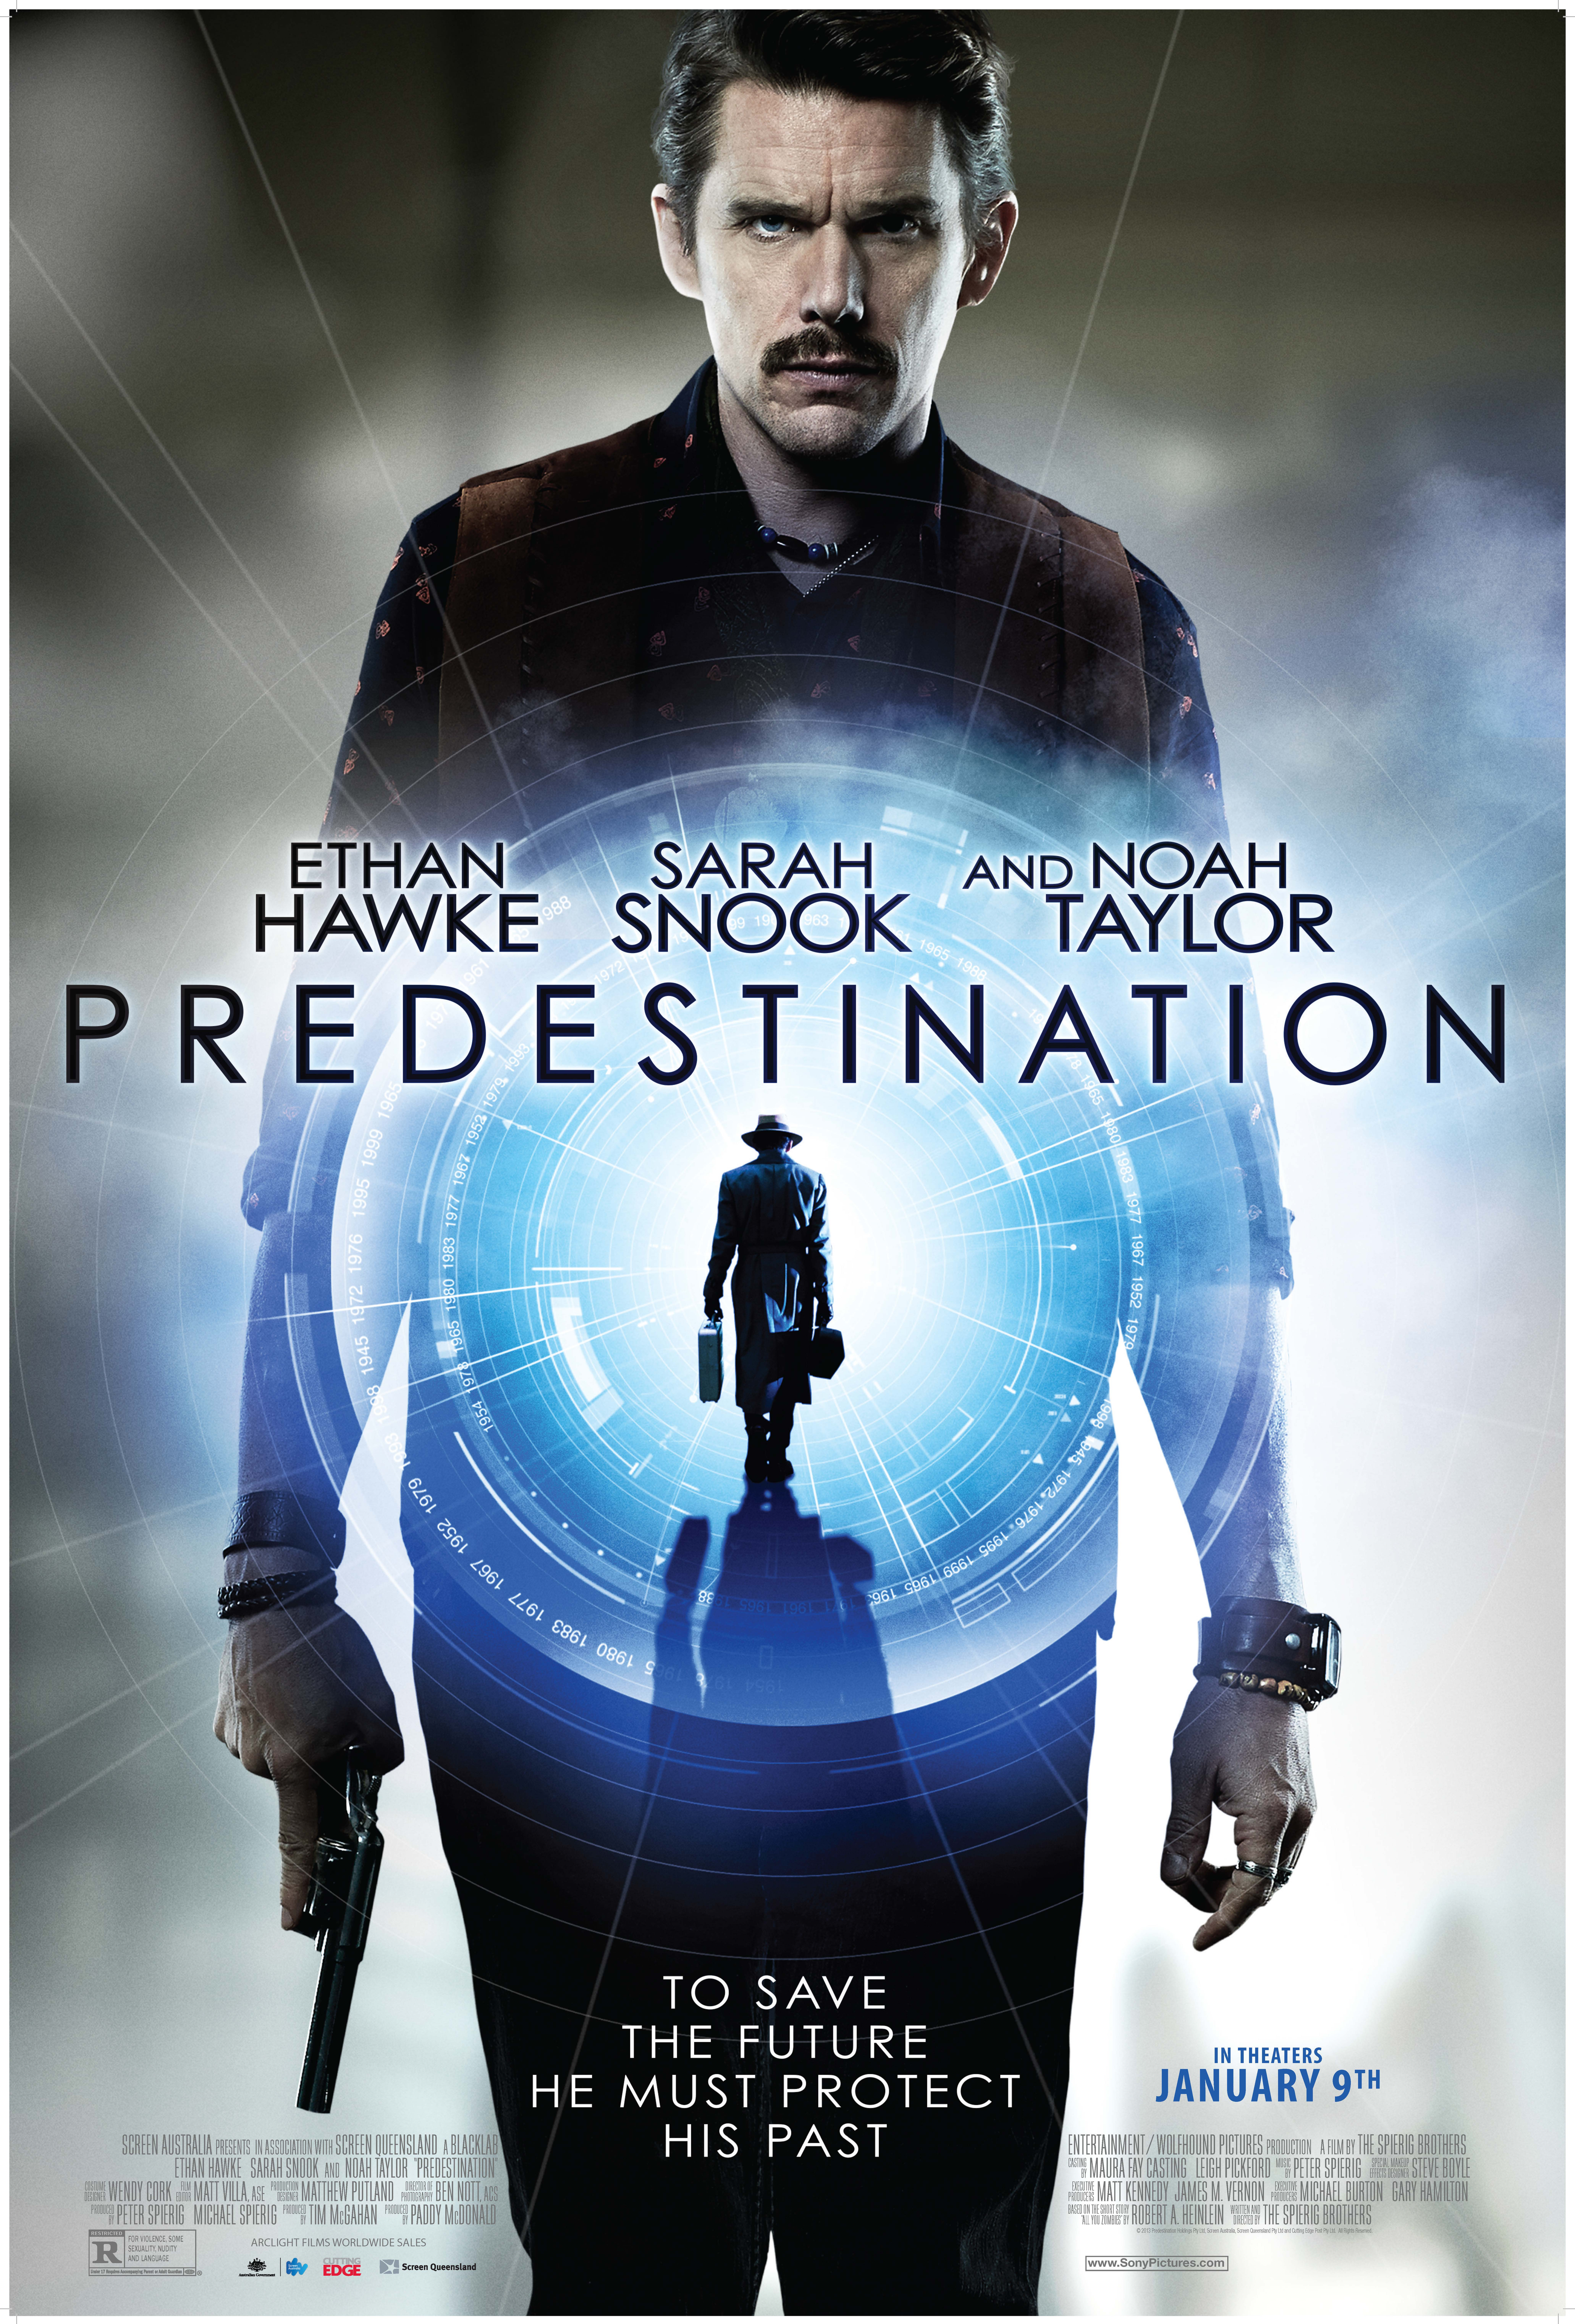 Ethan Hawke in Predestination (2014)